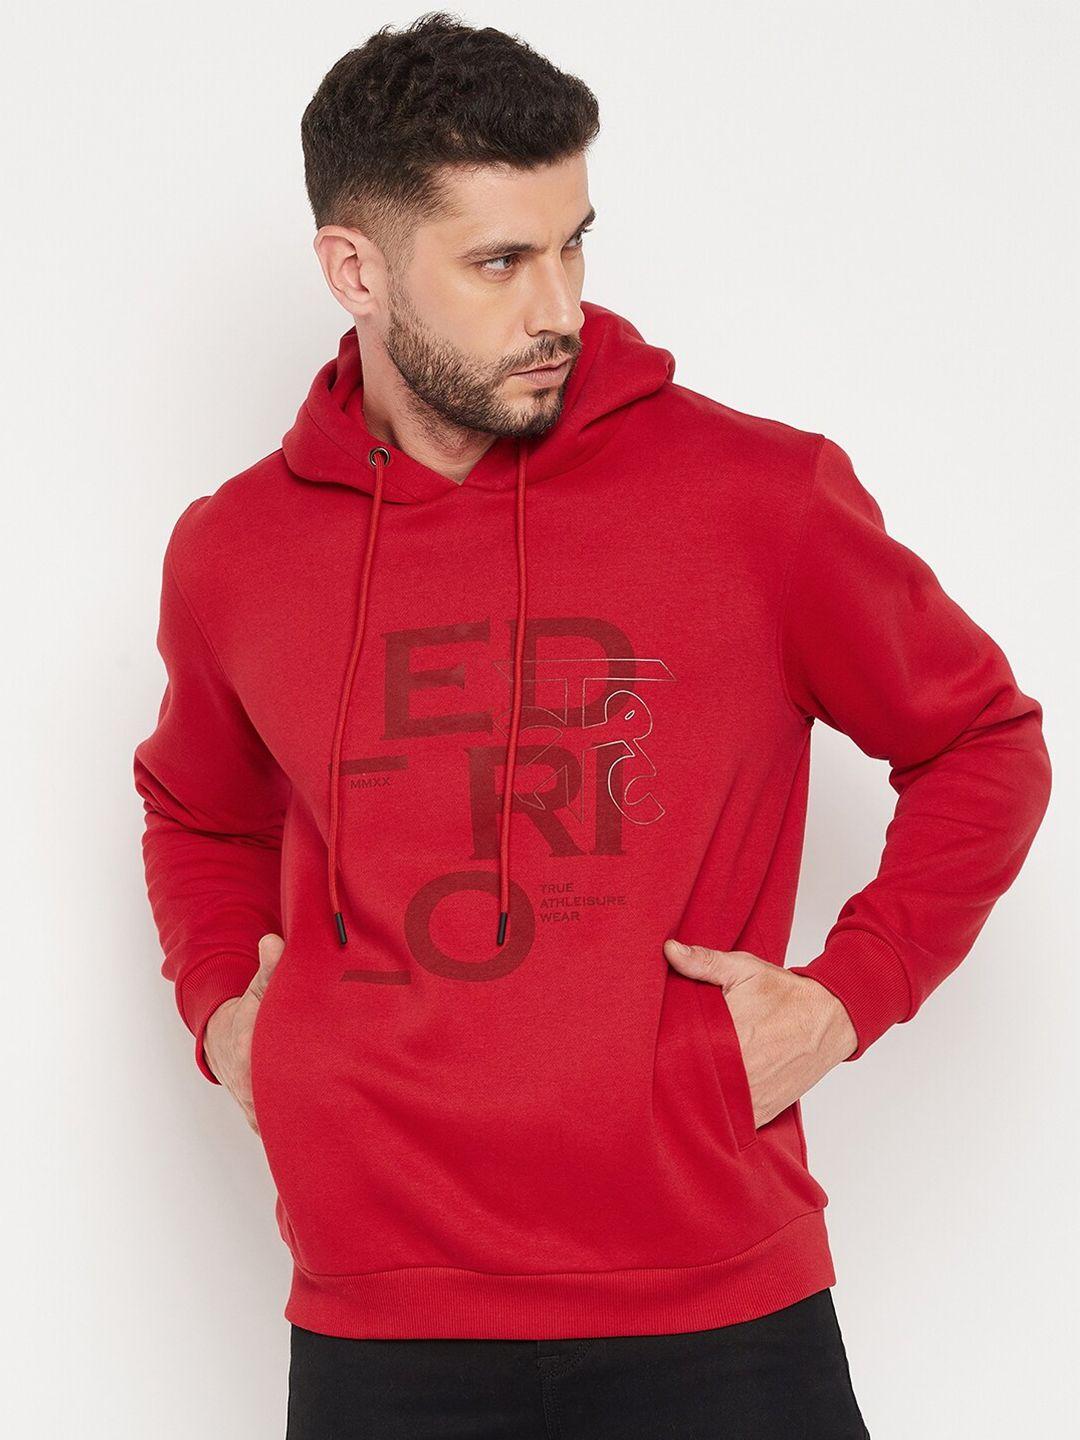 edrio men red printed hooded sweatshirt